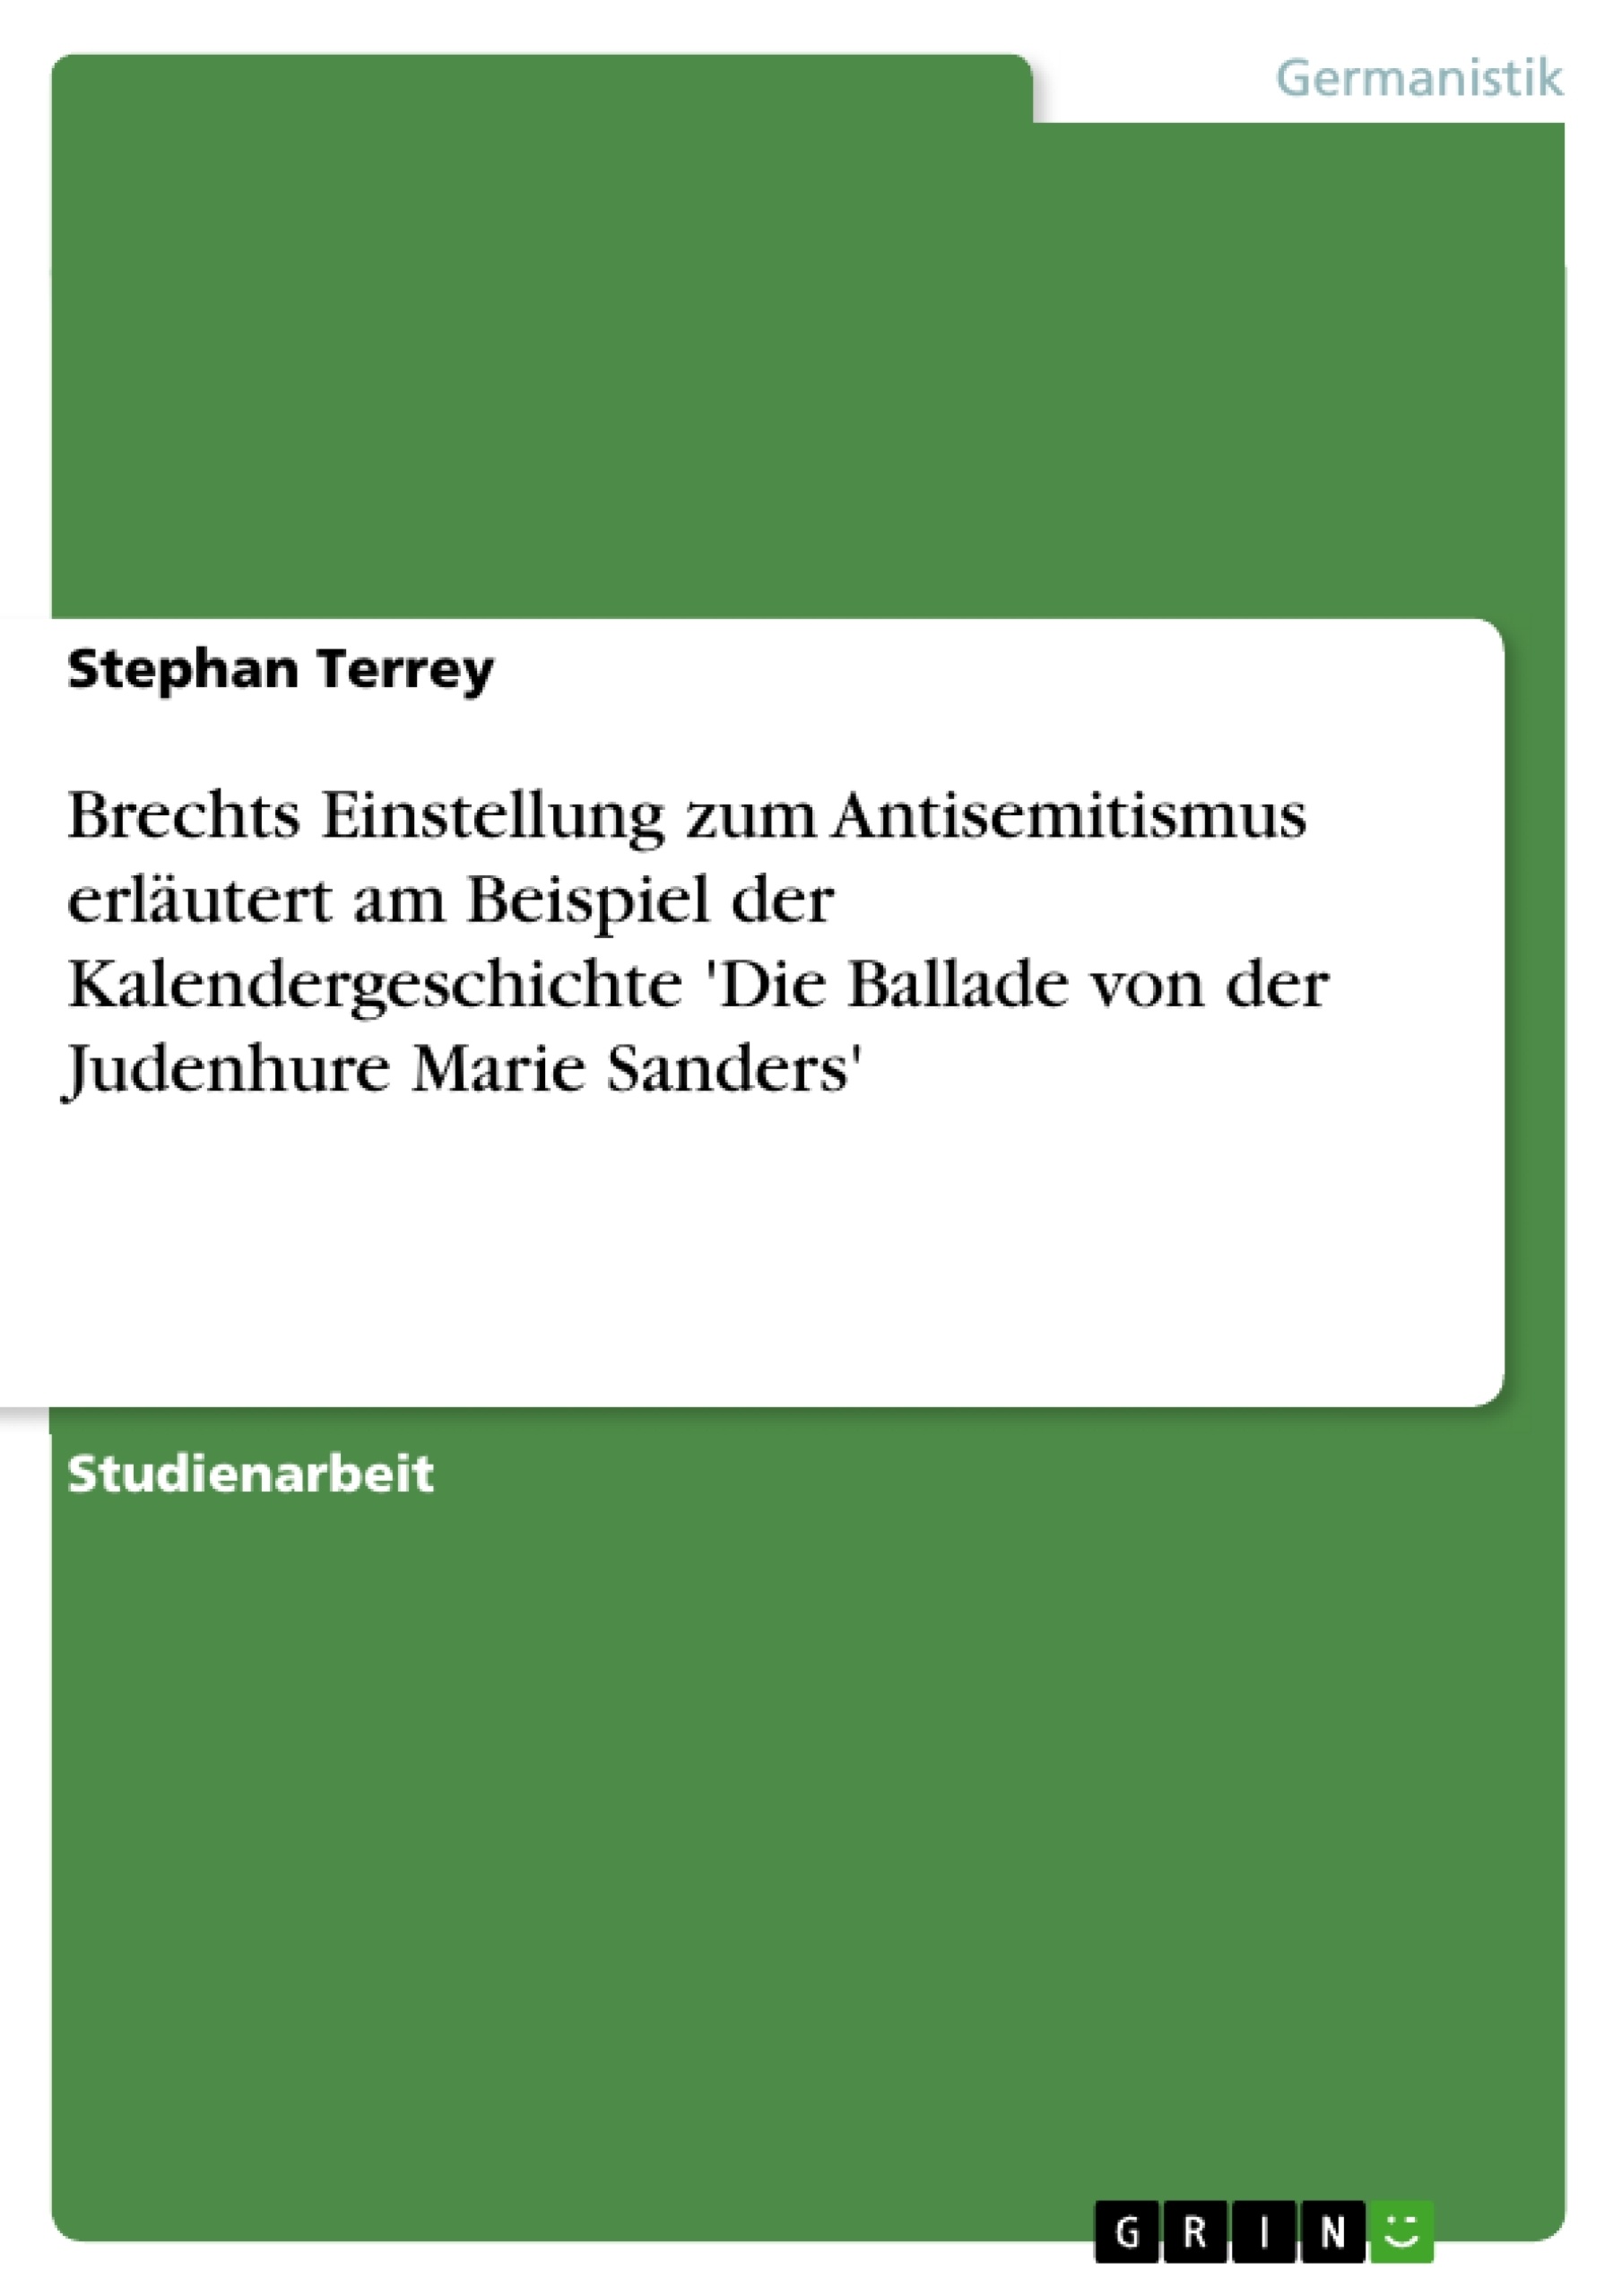 Title: Brechts Einstellung zum Antisemitismus erläutert am Beispiel der Kalendergeschichte 'Die Ballade von der Judenhure Marie Sanders'